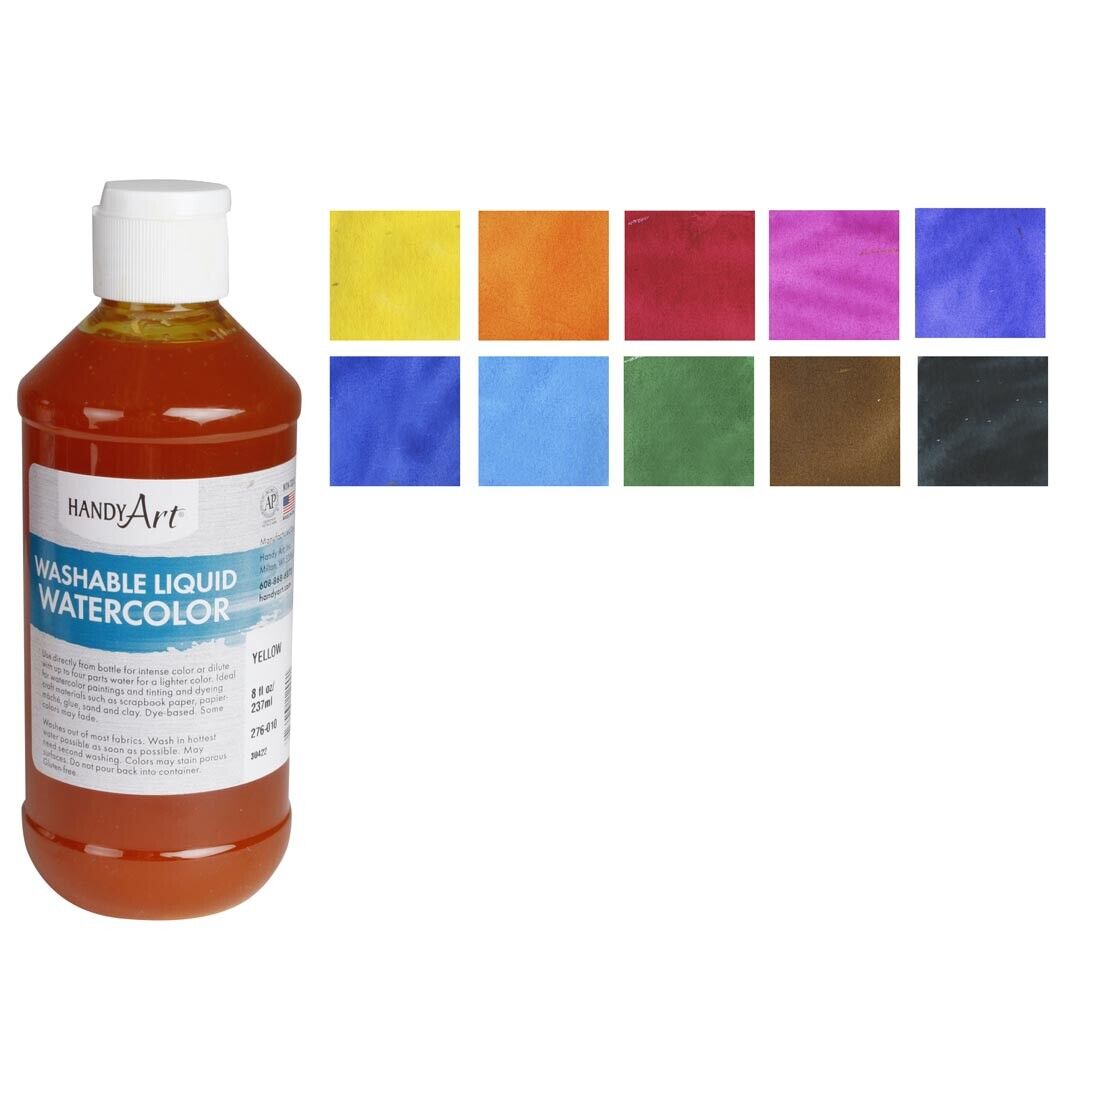 Handy Art Washable Liquid Watercolors 10-color Set